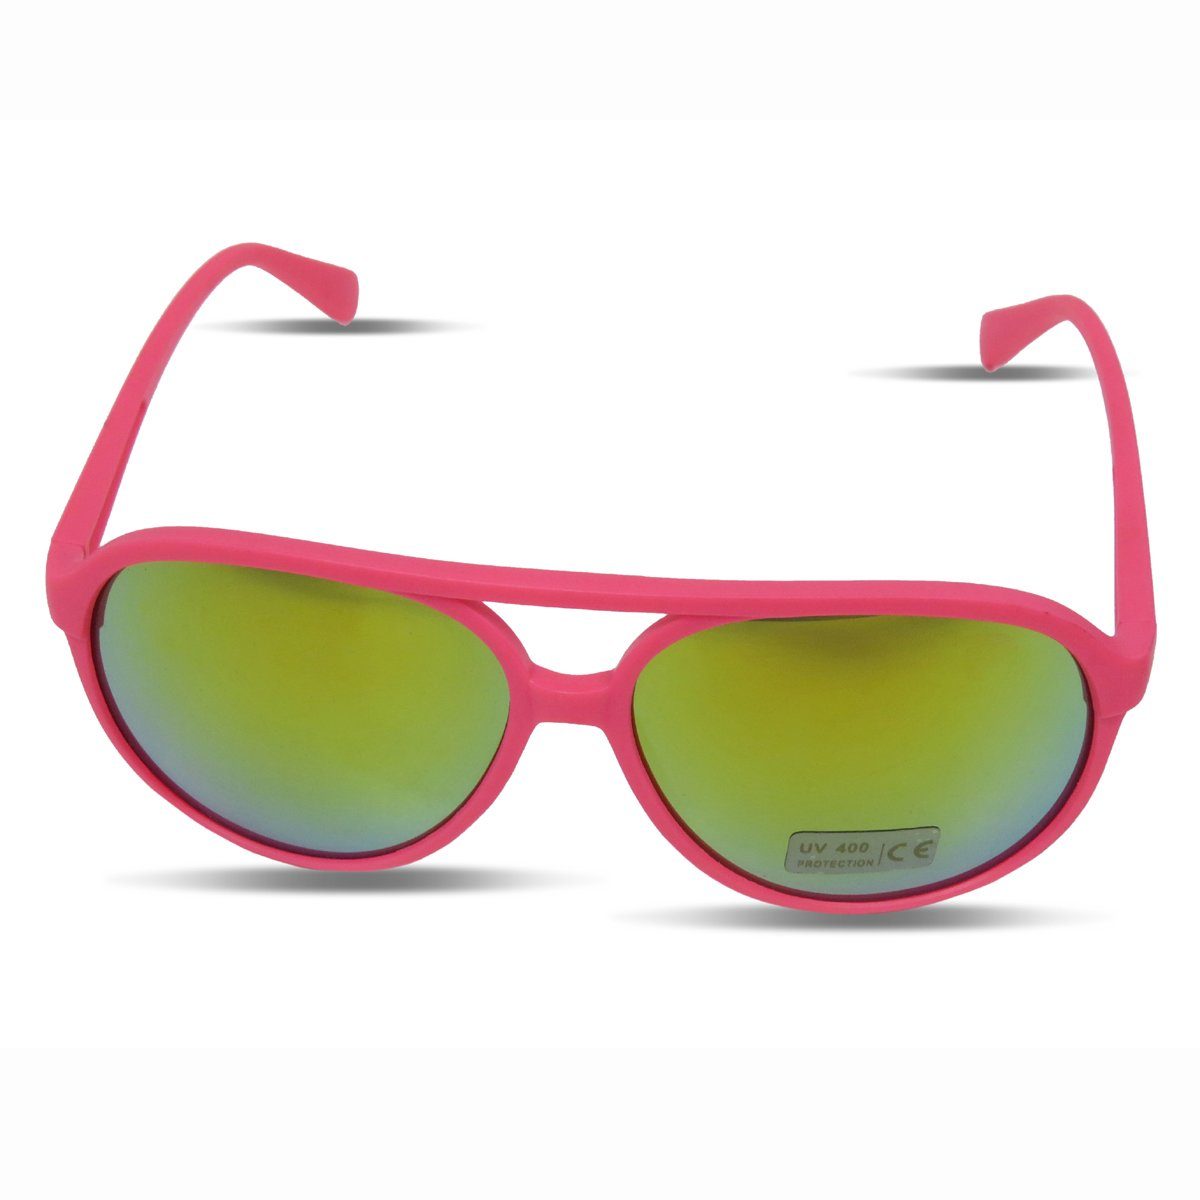 Sonia Originelli Sonnenbrille Sonnenbrille Neon Knallig Verspiegelt Fun Brille Onesize, Gläser: Verspiegelt pink